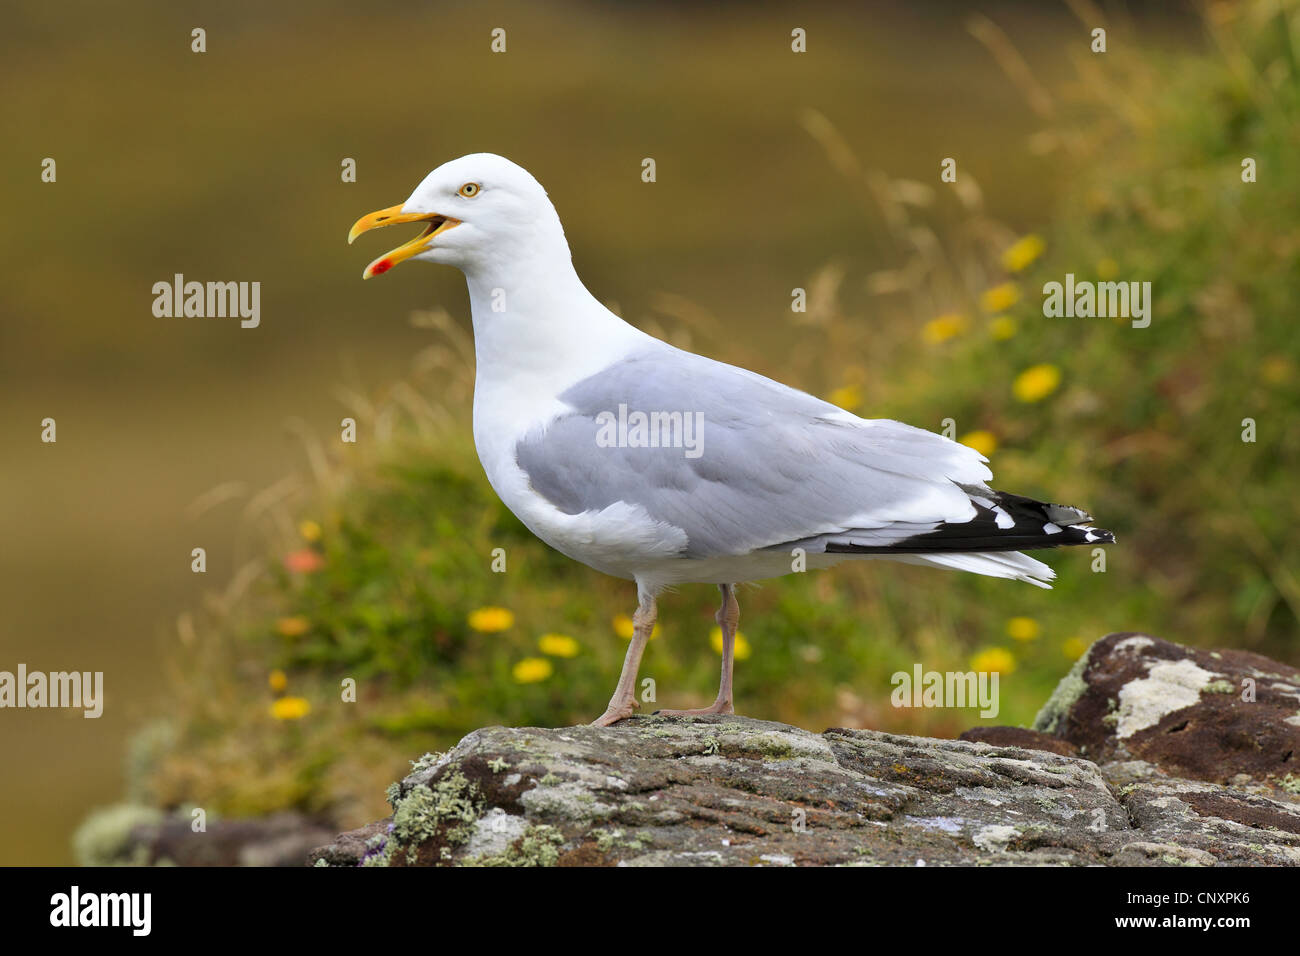 Yellow-legged Gull (Larus michahellis, Larus cachinnans michahellis), assis sur un rocher, appelant, Royaume-Uni, Ecosse, Handa Island Banque D'Images